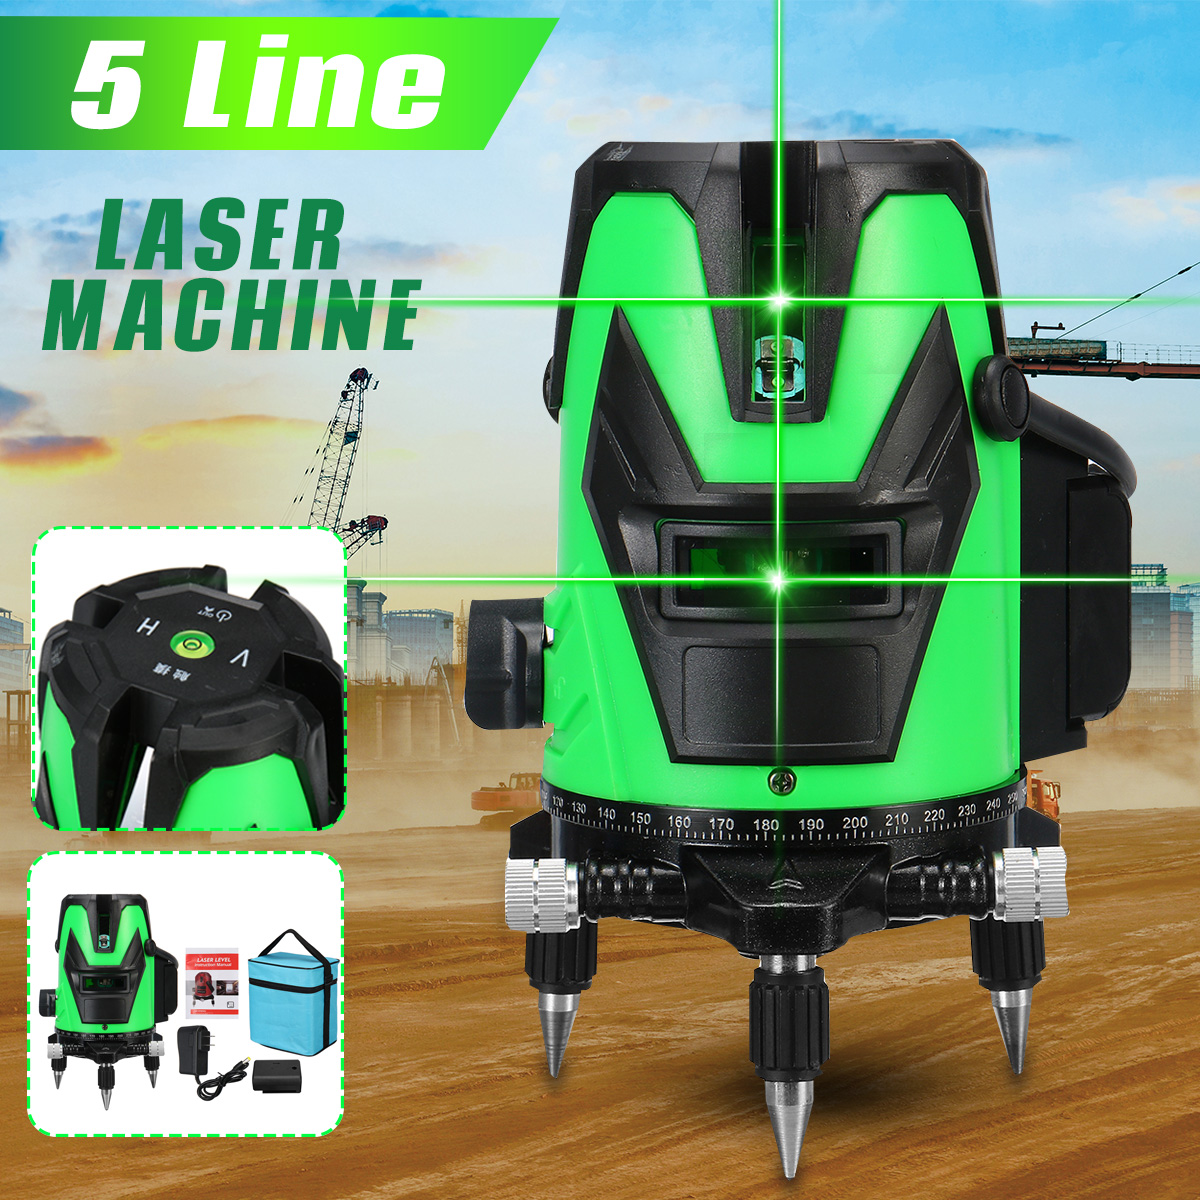 5-Line-Laser-Level-Green-Light-Self-Leveling-3D-360deg-Rotary-Cross-Measure-Tools-1774434-2